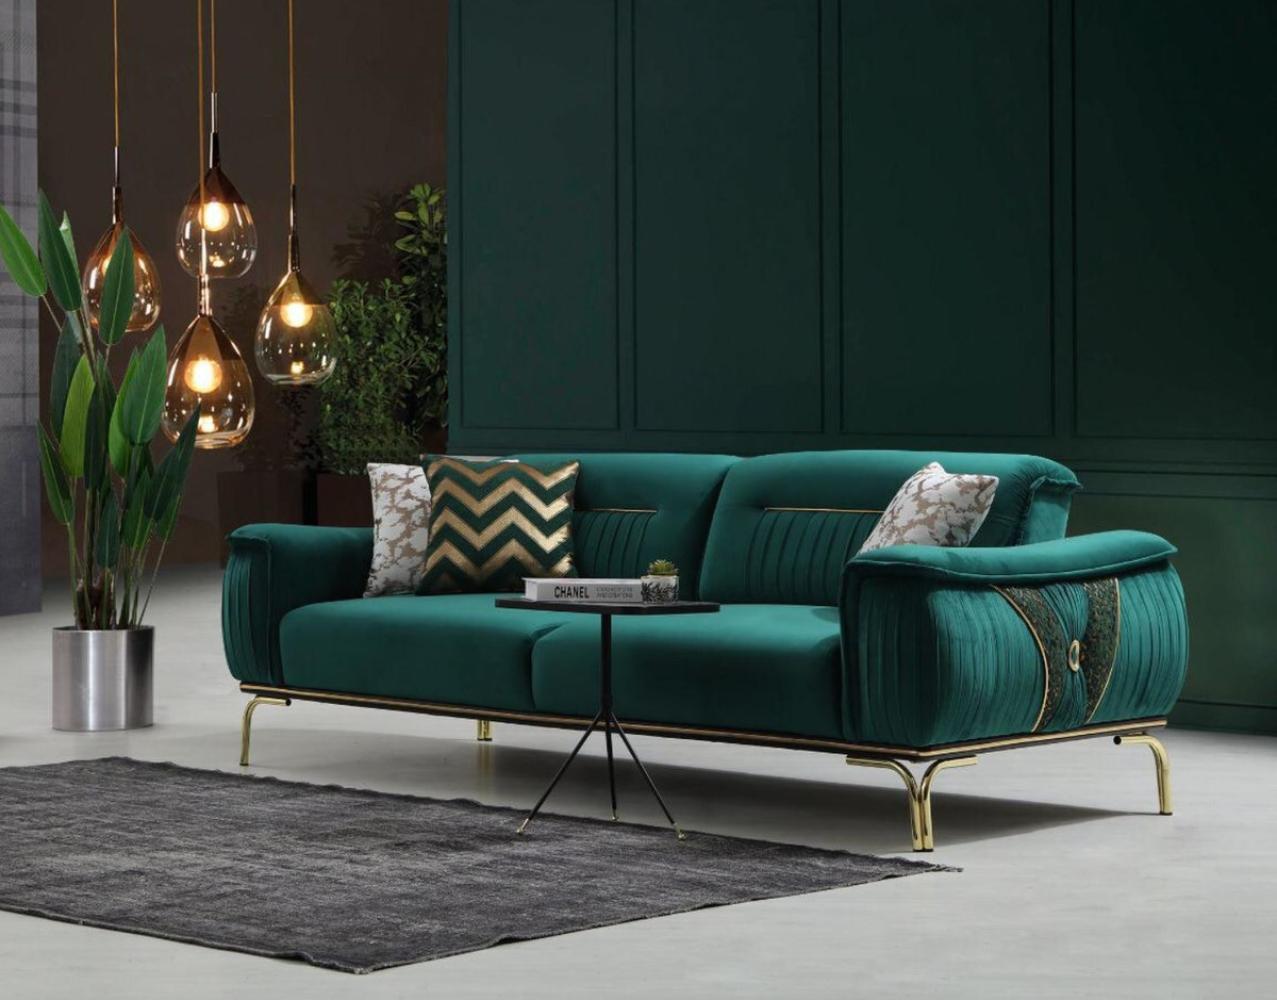 Casa Padrino Luxus Wohnzimmer Sofa mit verstellbarer Rückenlehne Grün / Gold 223 x 93 x H. 78 cm - Luxus Wohnzimmer Möbel Bild 1